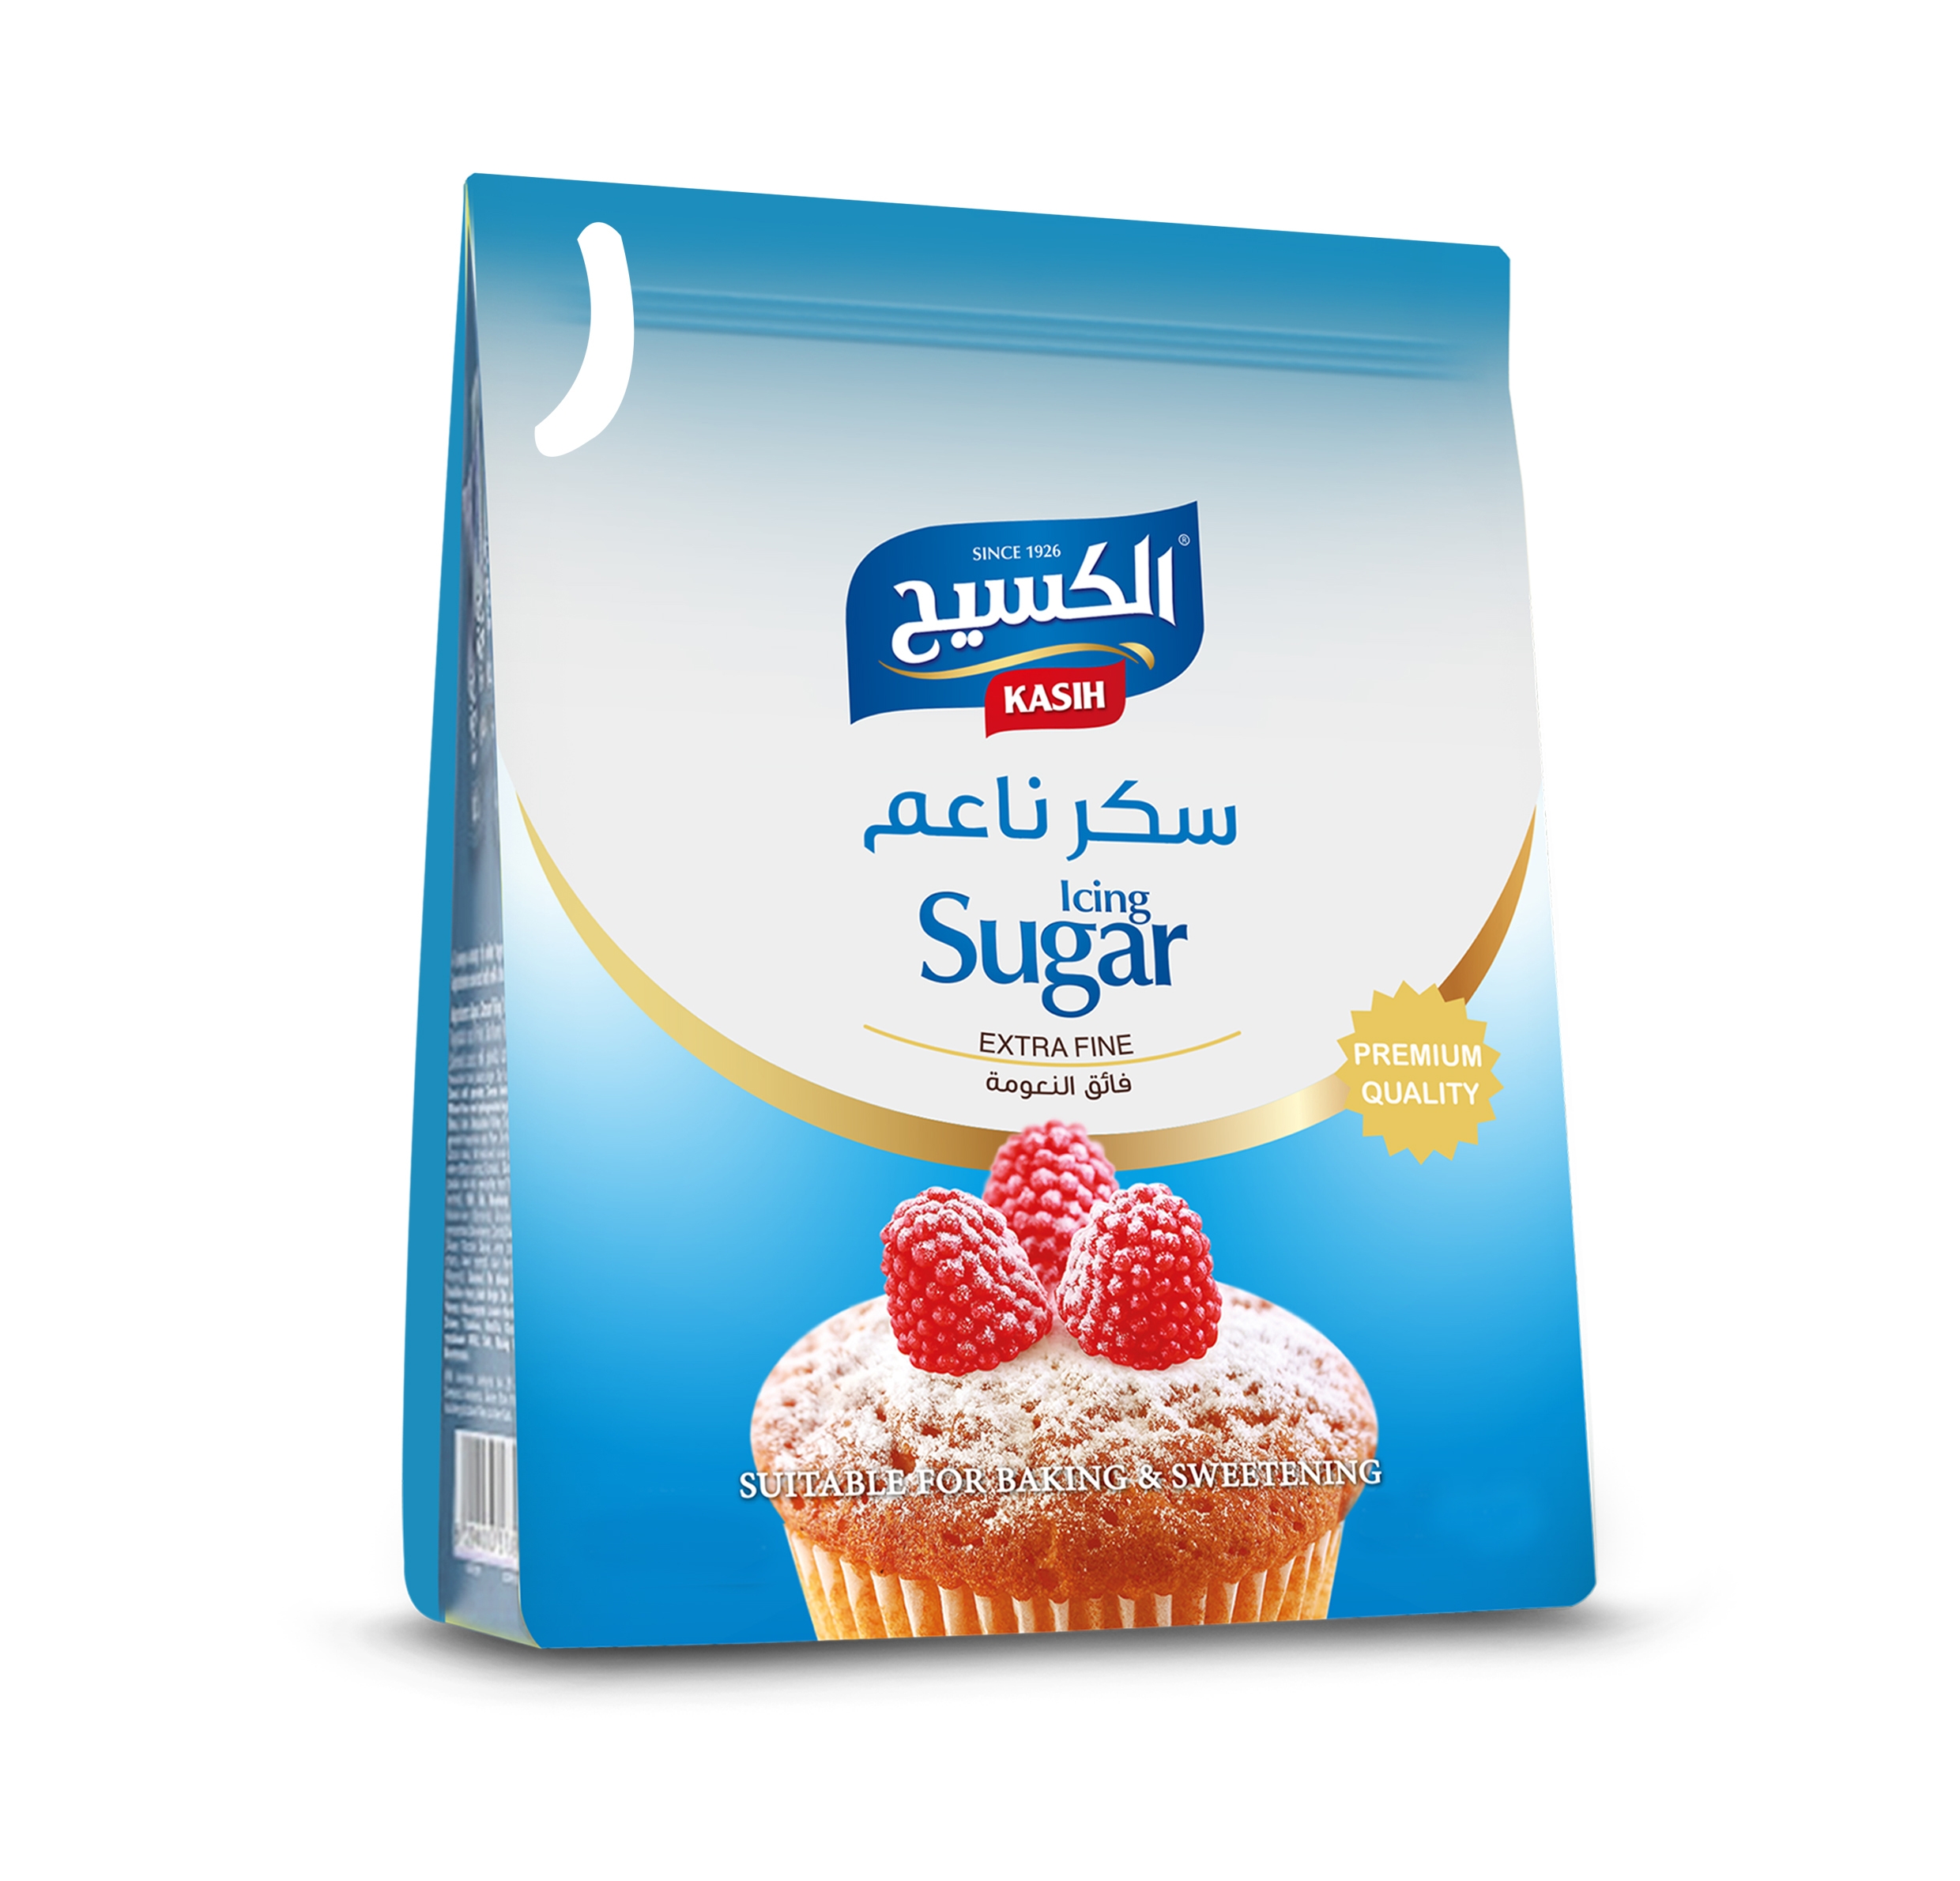 Kasih Icing Sugar